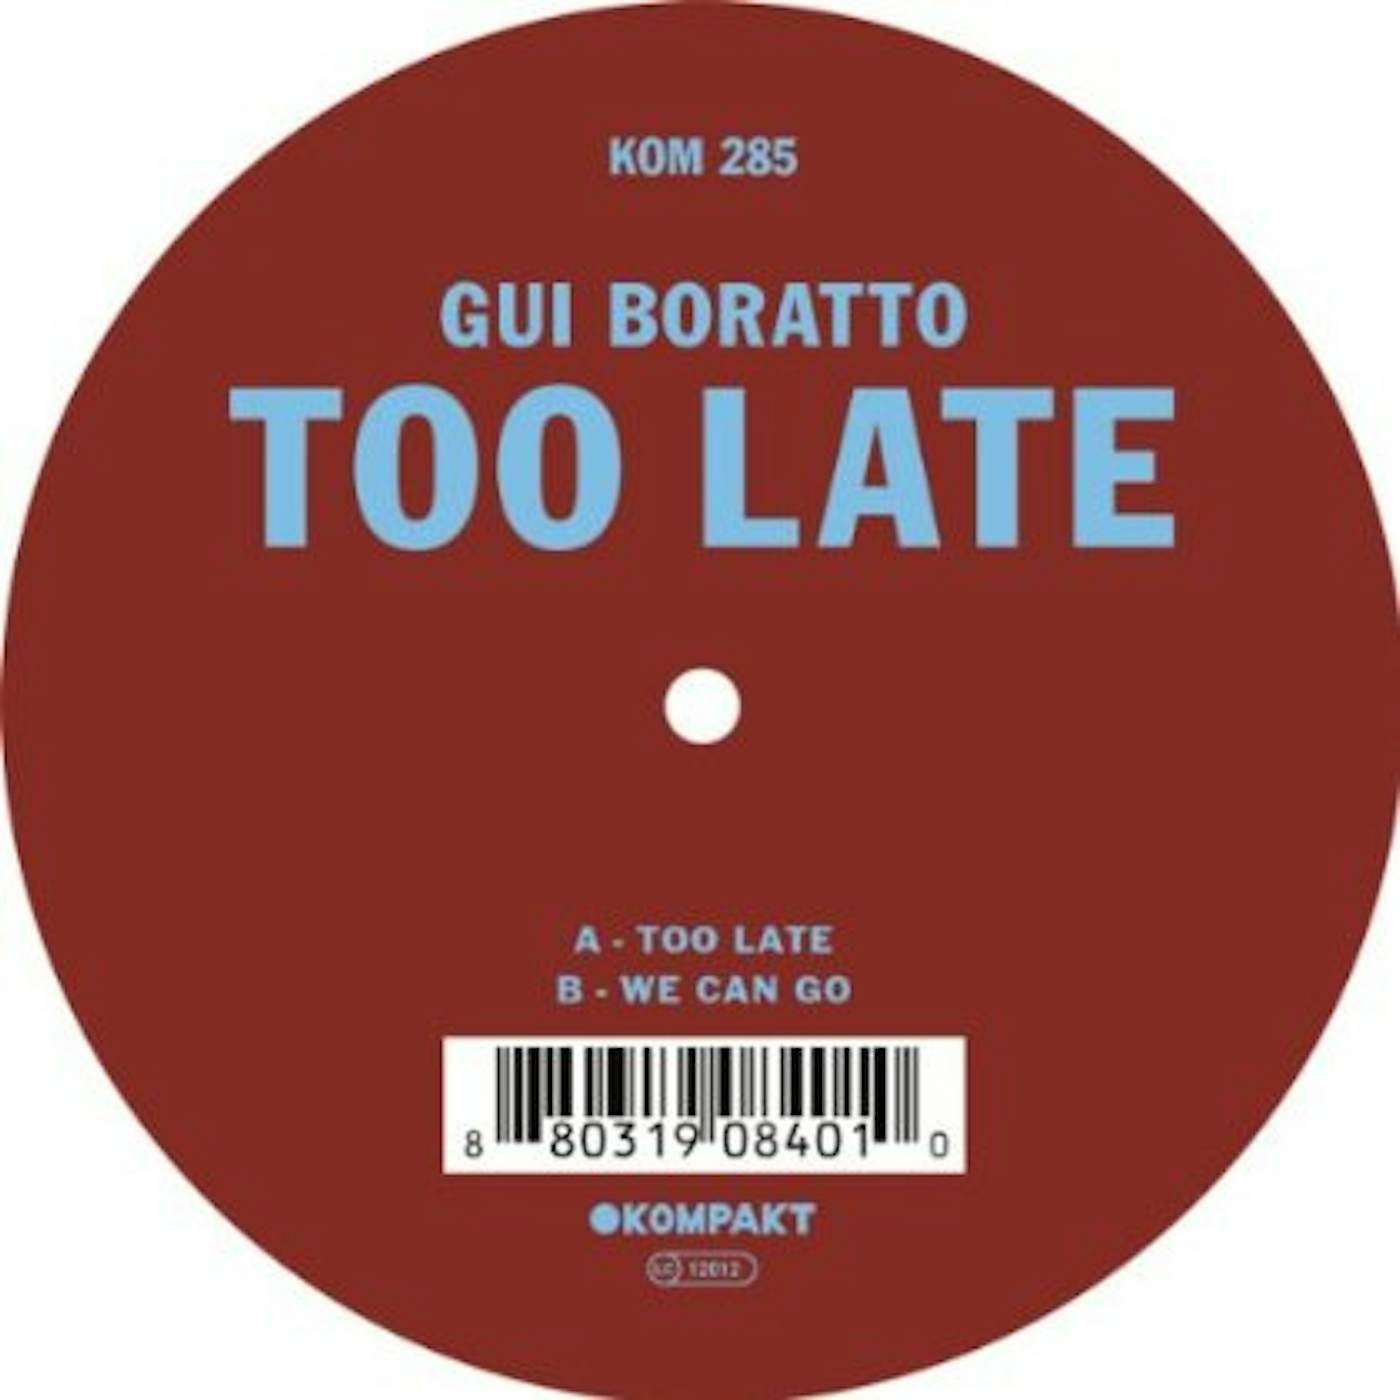 Gui Boratto Too Late Vinyl Record